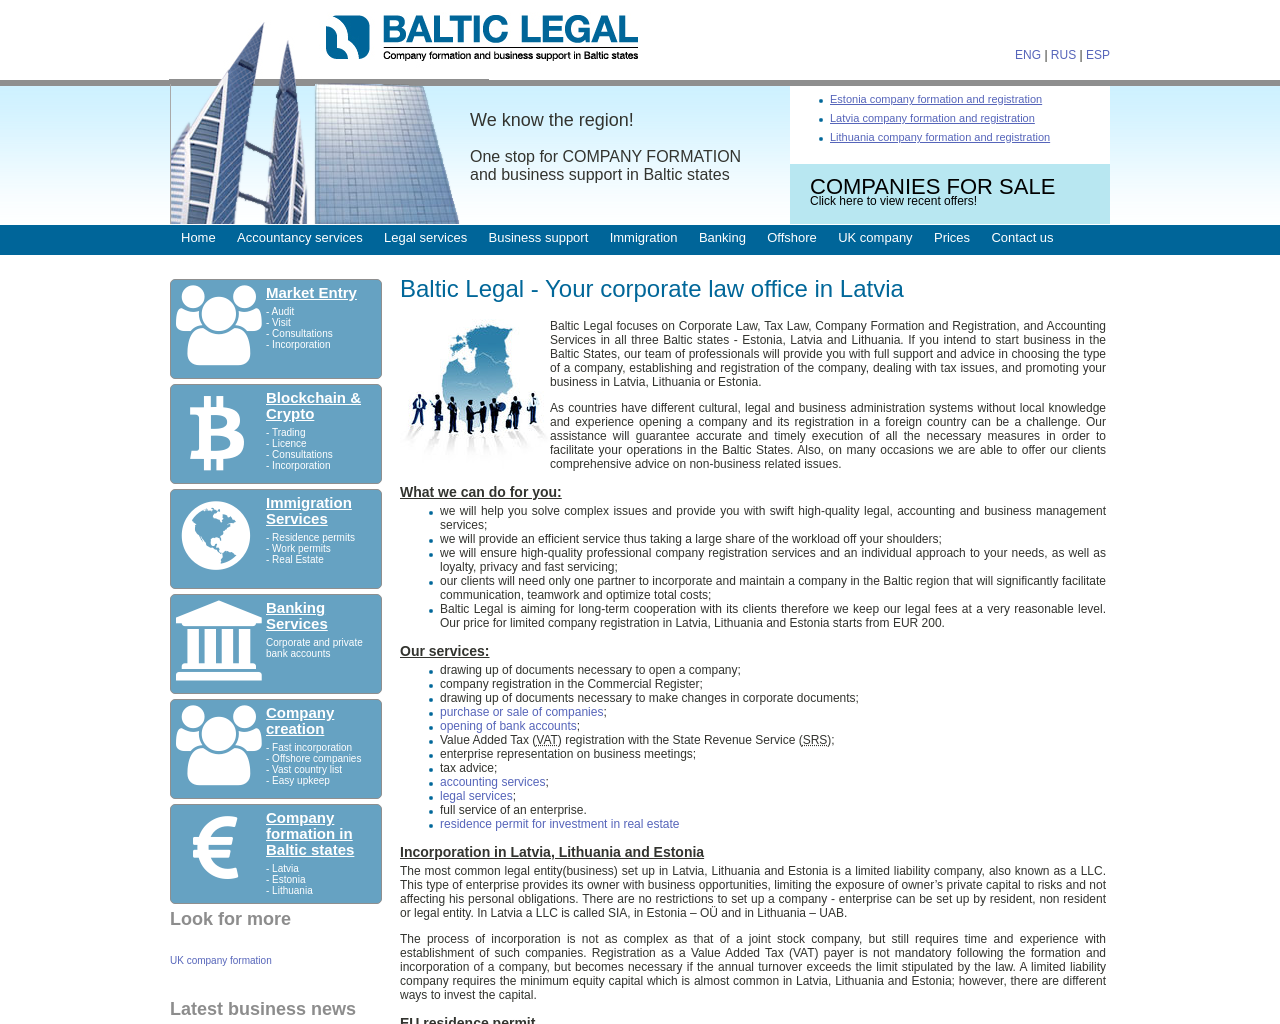 baltic-legal.com